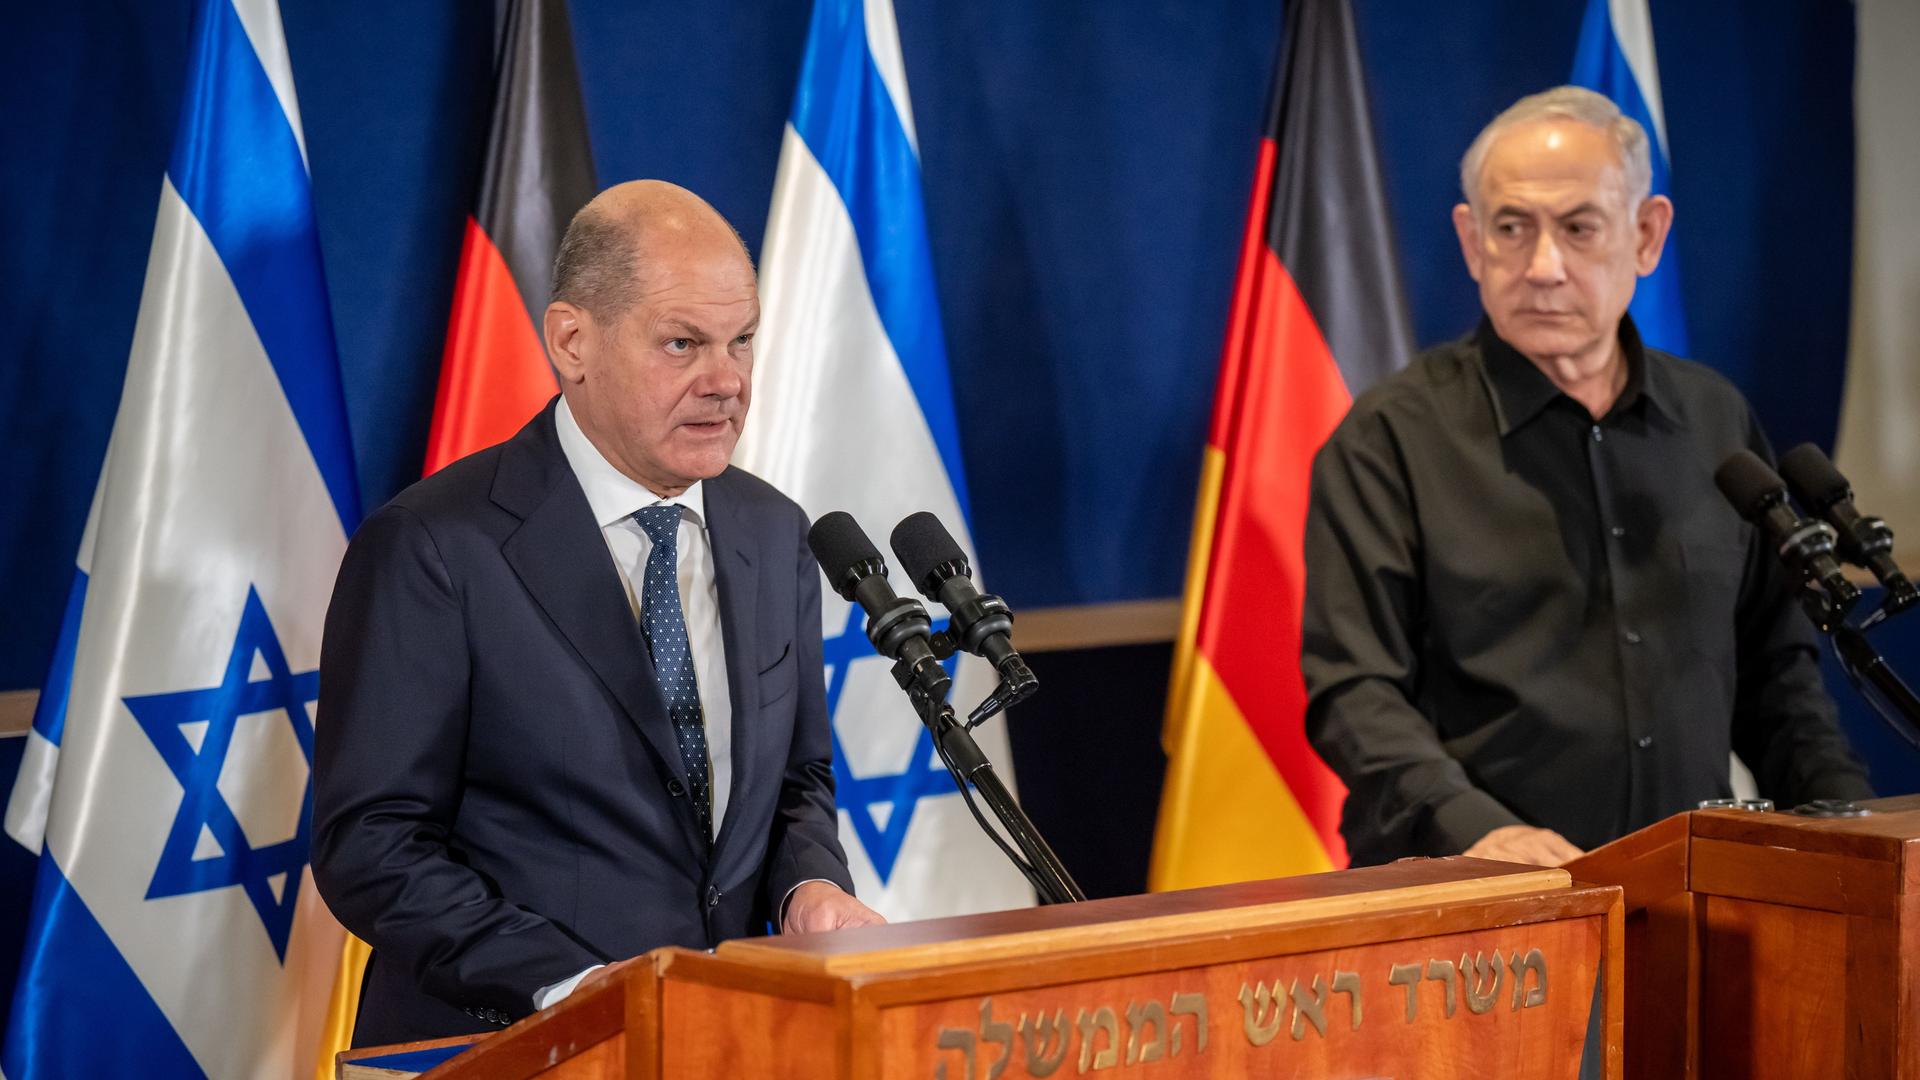 Die beiden stehen an hölzernen Rednerpulten vor den Flaggen ihrer Länder. Scholz sagte gerade etwas; Netanjahu sieht ihn an.